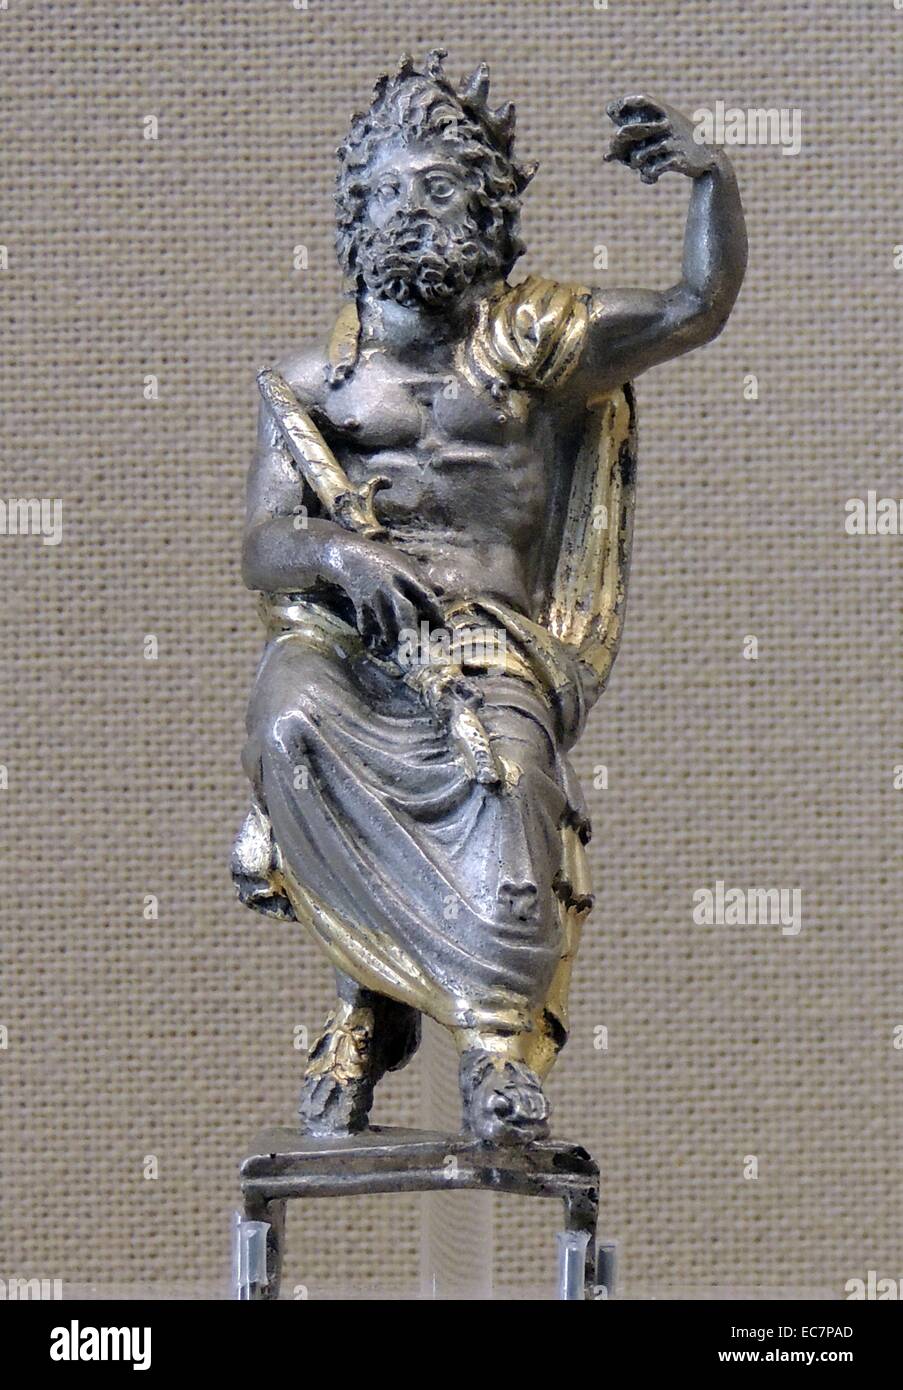 Zeus, patrono de los Juegos Olímpicos. Estas cifras, dos de plata flanqueando una estatuilla de bronce central, fueron inspirados por la colosal estatua de oro y marfil de Zeus hecha por Pheidias para el templo de Dios en Olimpia. Roman, AD1-80. Foto de stock